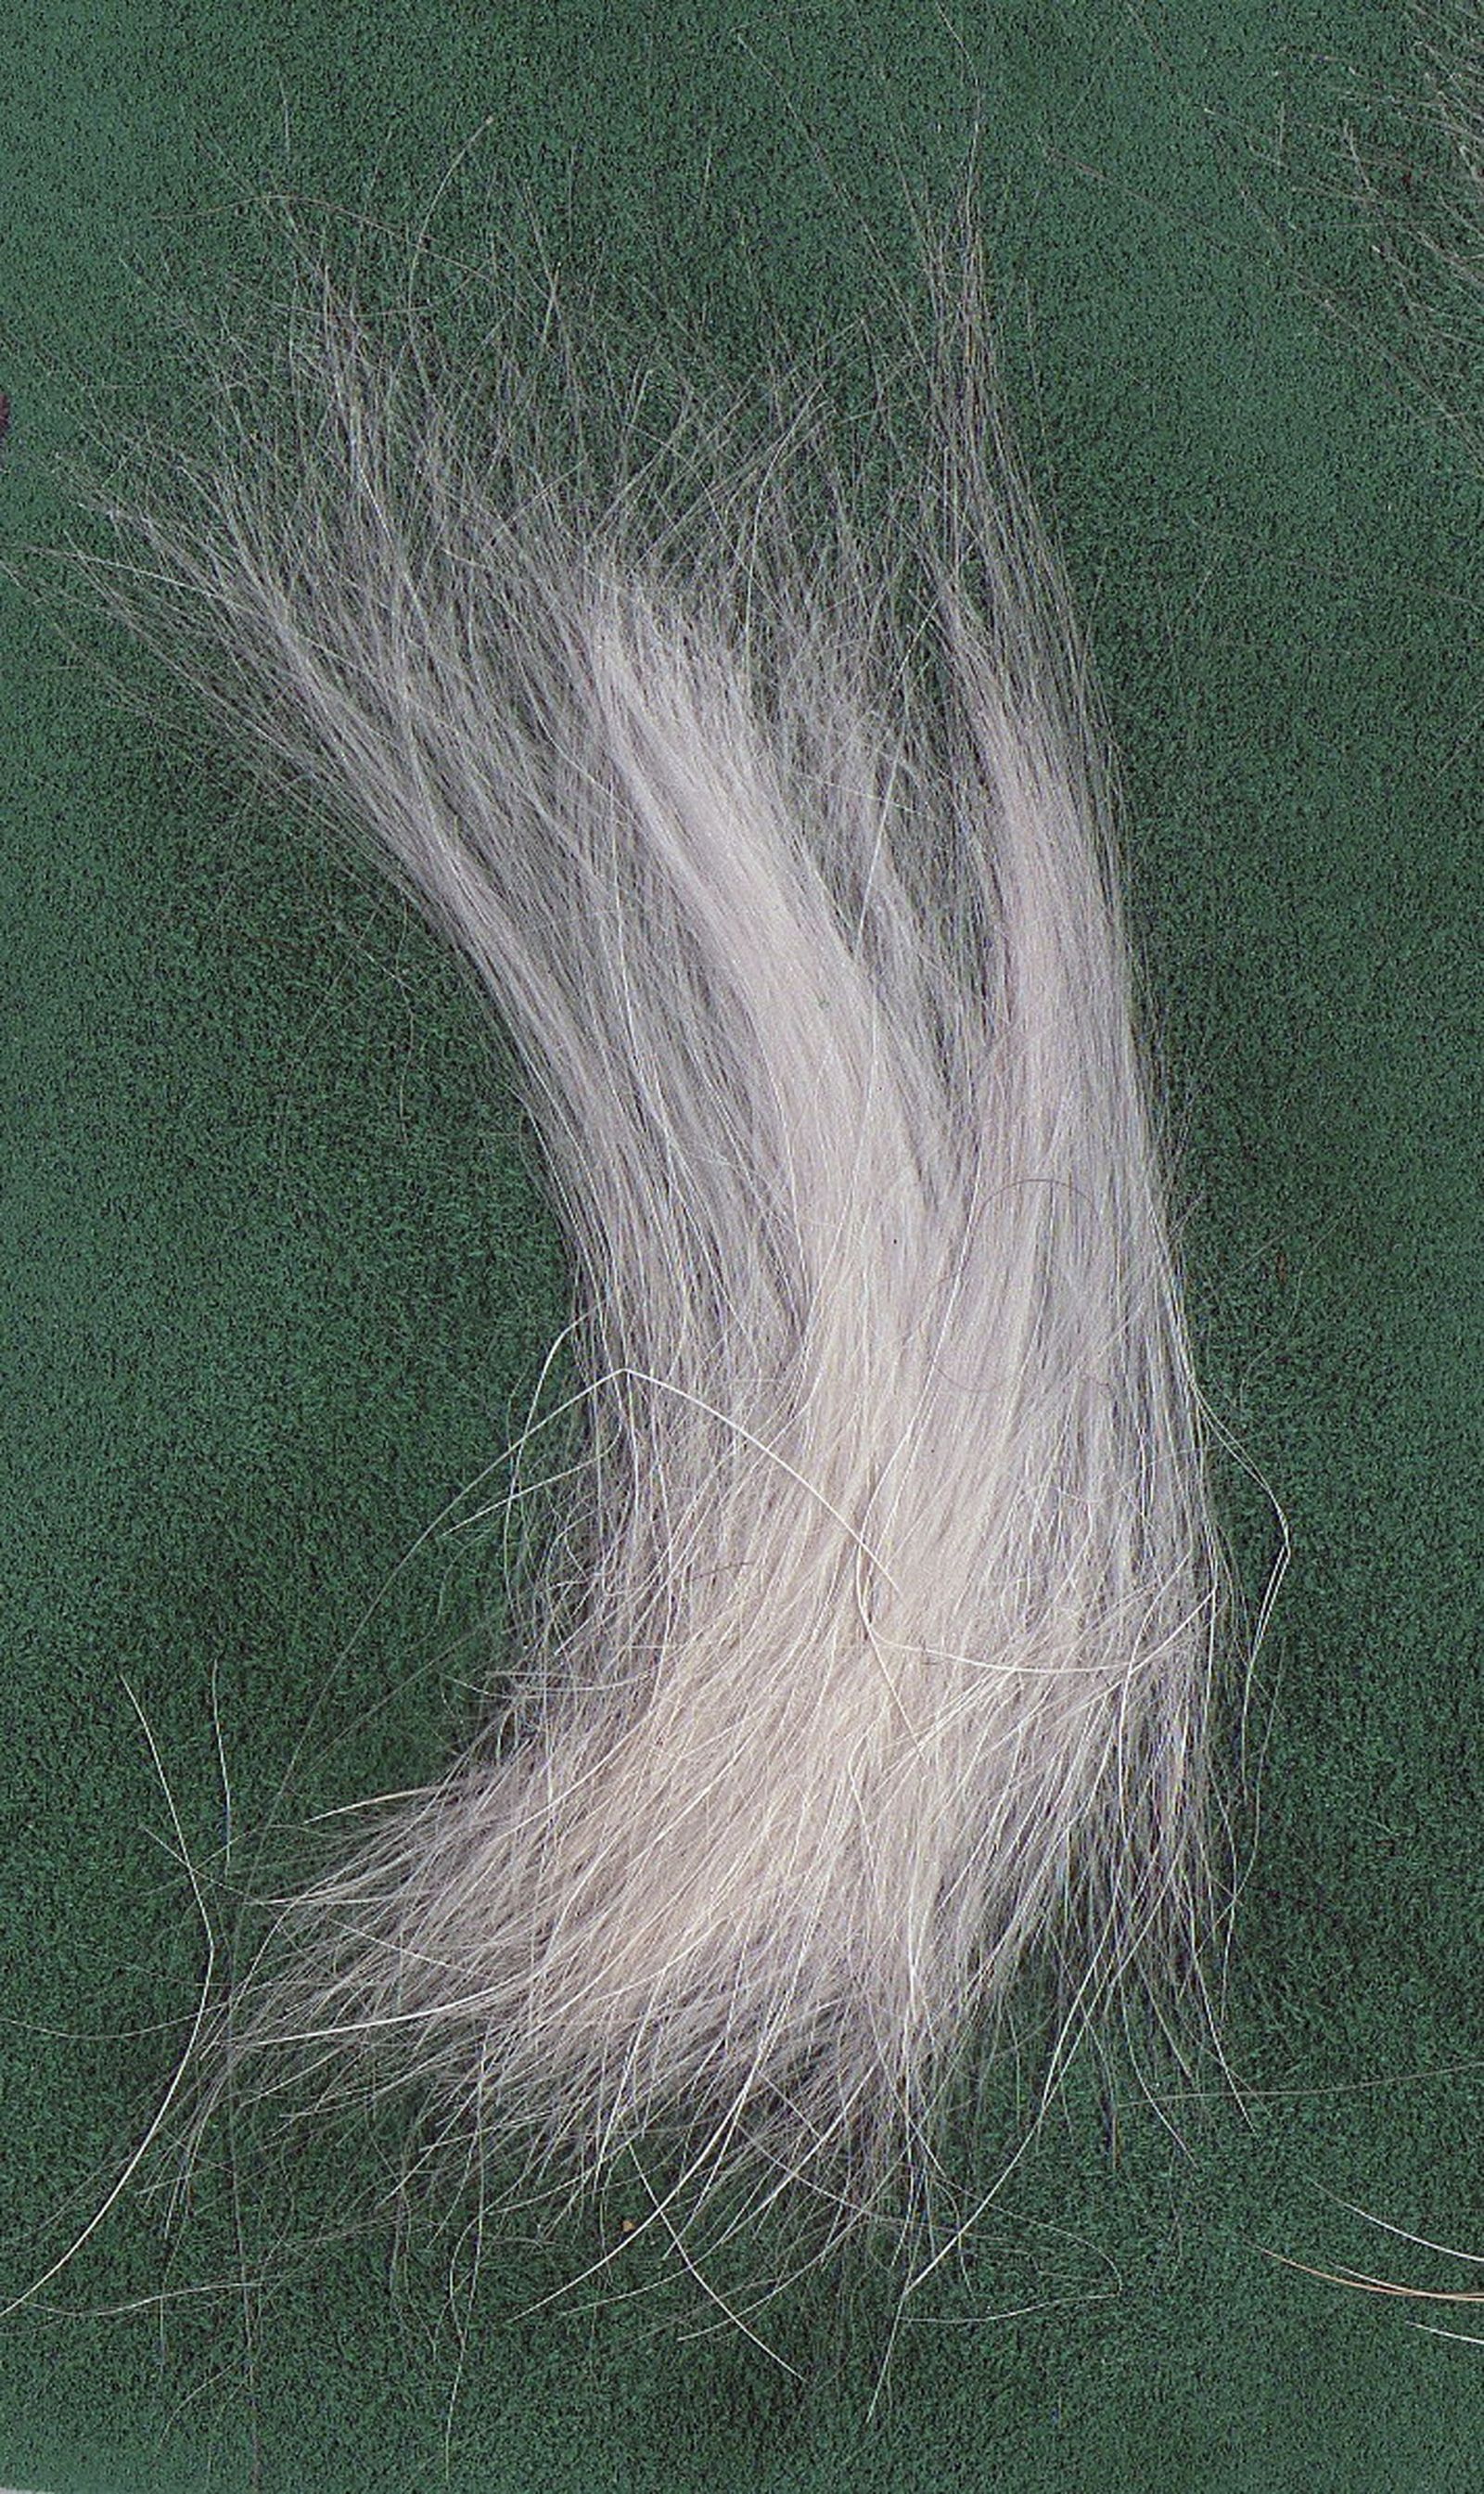 Weisses Haar vom West Highland White Terrier auf grünem Untergrund in Nahaufnahme